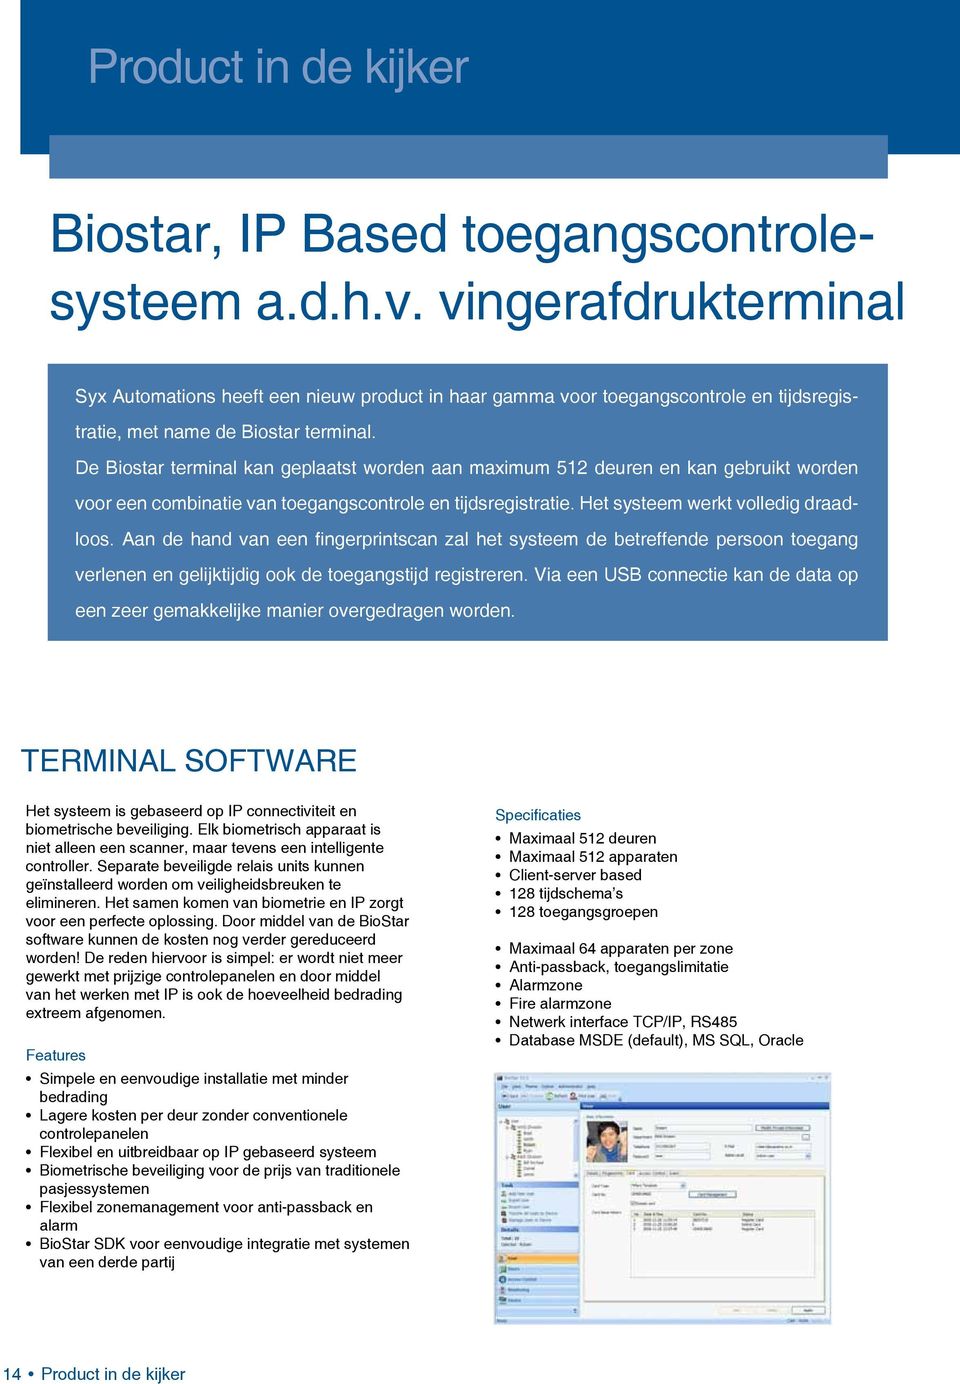 De Biostar terminal kan geplaatst worden aan maximum 512 deuren en kan gebruikt worden voor een combinatie van toegangscontrole en tijdsregistratie. Het systeem werkt volledig draadloos.